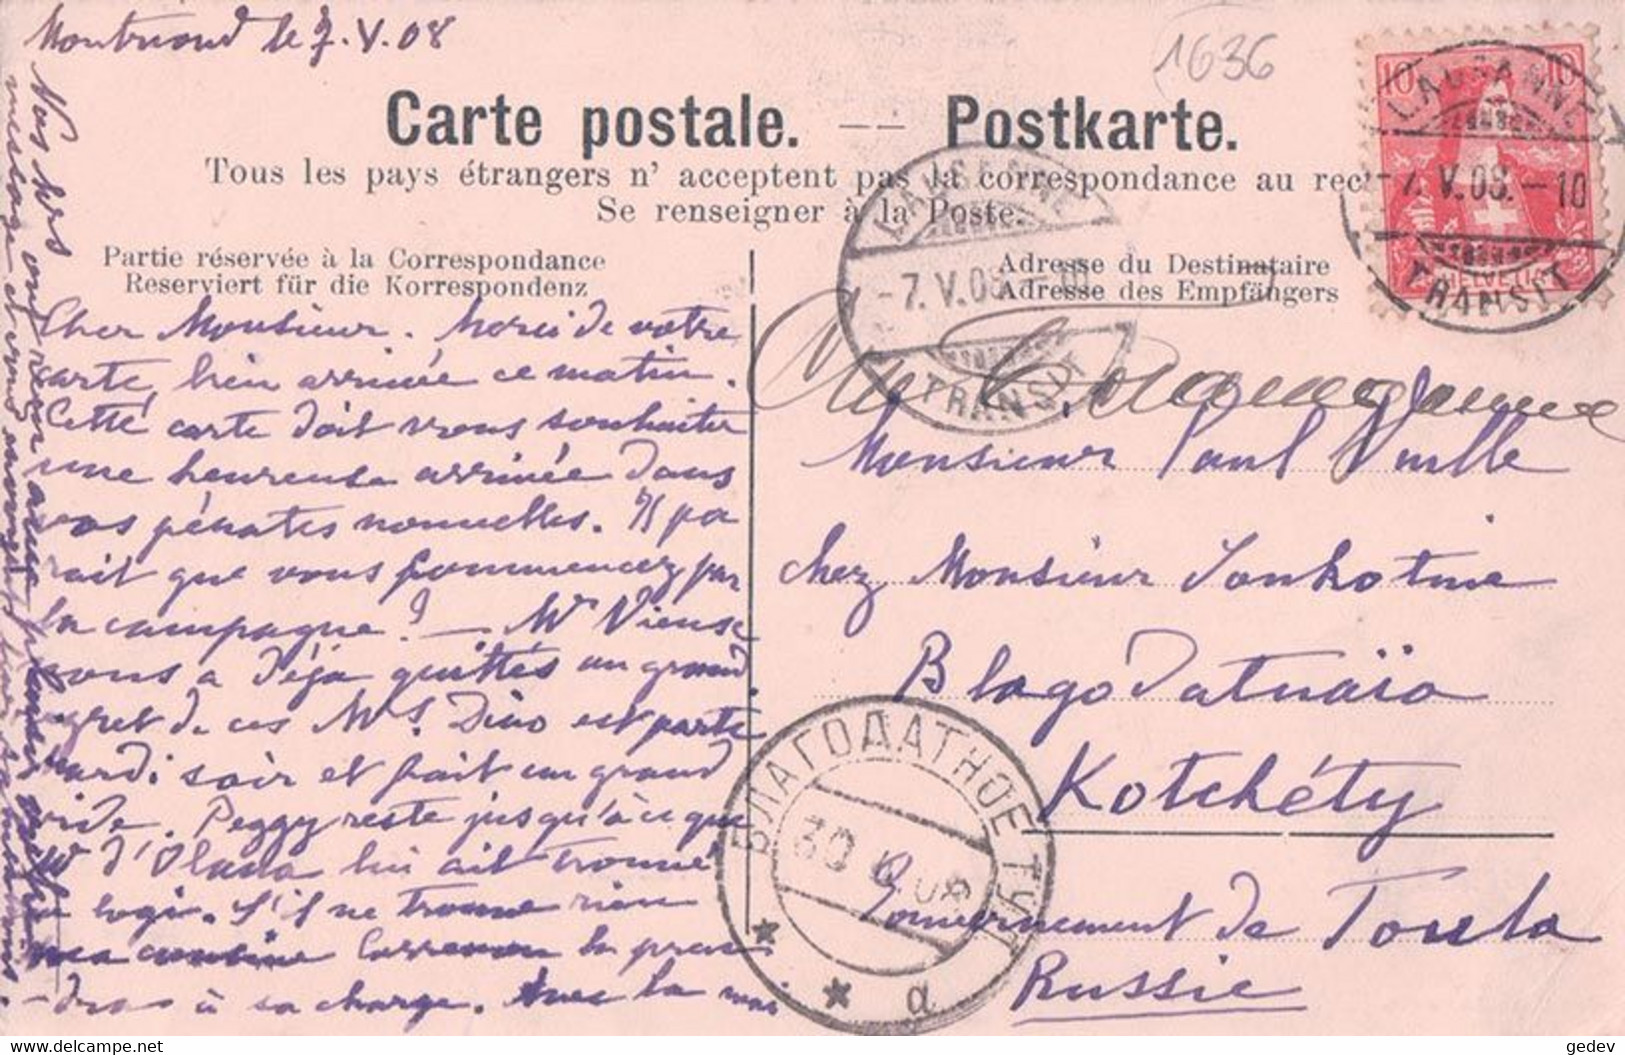 Lausanne, Rond - Point De Mont-Riond, Avenue Dapples Et De La Harpe, Carte Envoyée à Kotchéty Russie (7.5.08) - Apples